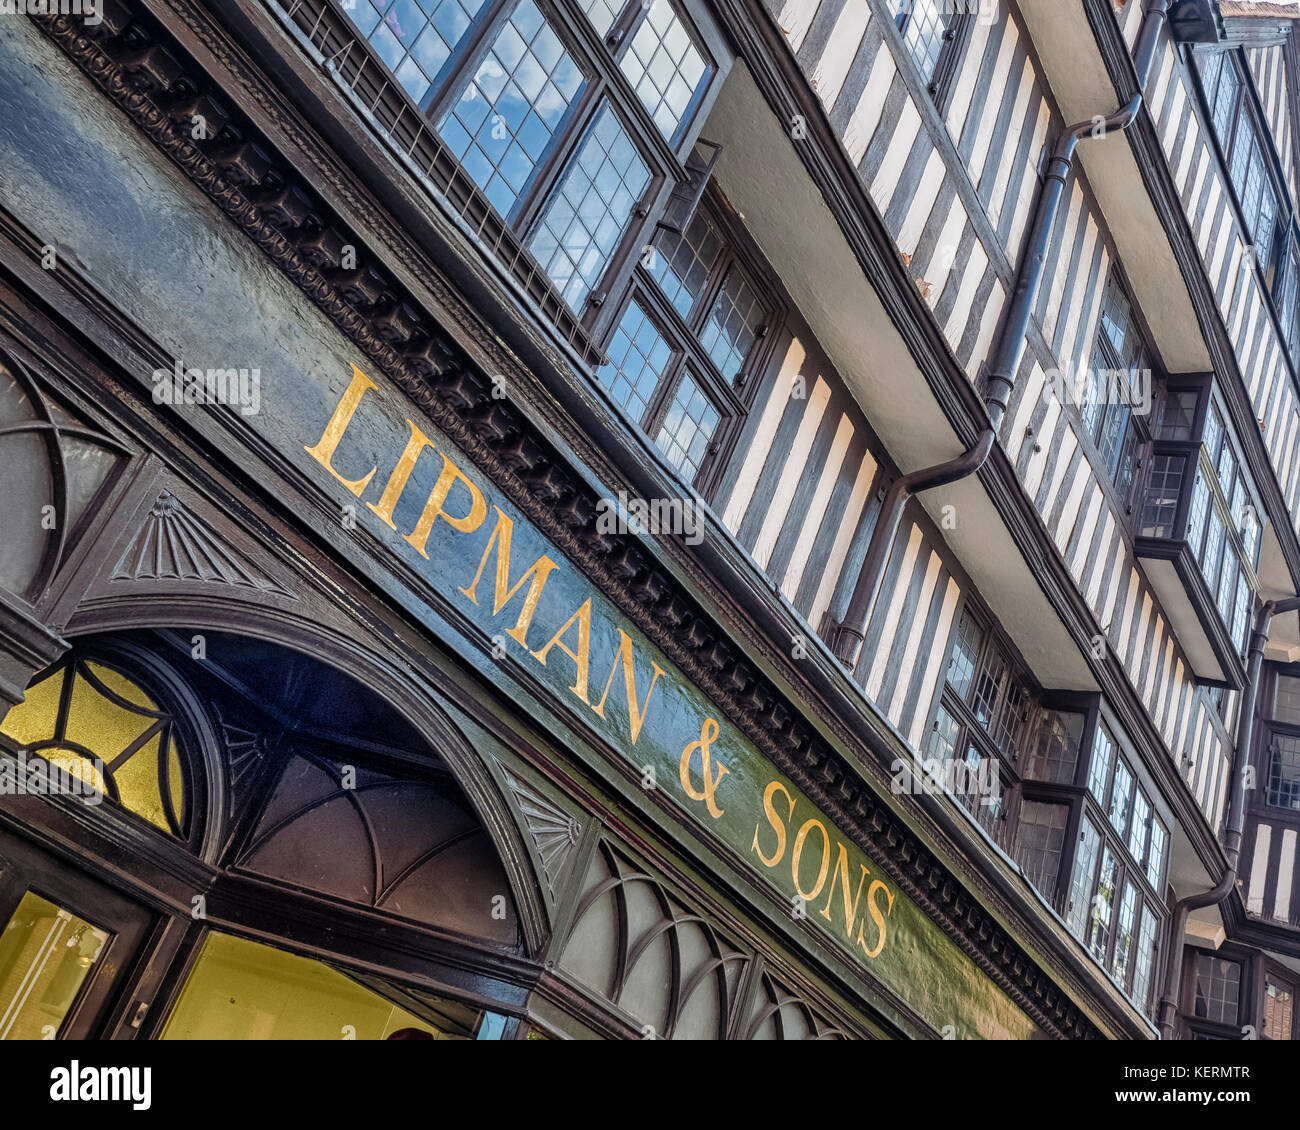 STAPLE INN BUILDING, HIGH HOLBORN, LONDON:  High Holborn Shop Sign on the Tudor Grade 1 Listed Building Stock Photo